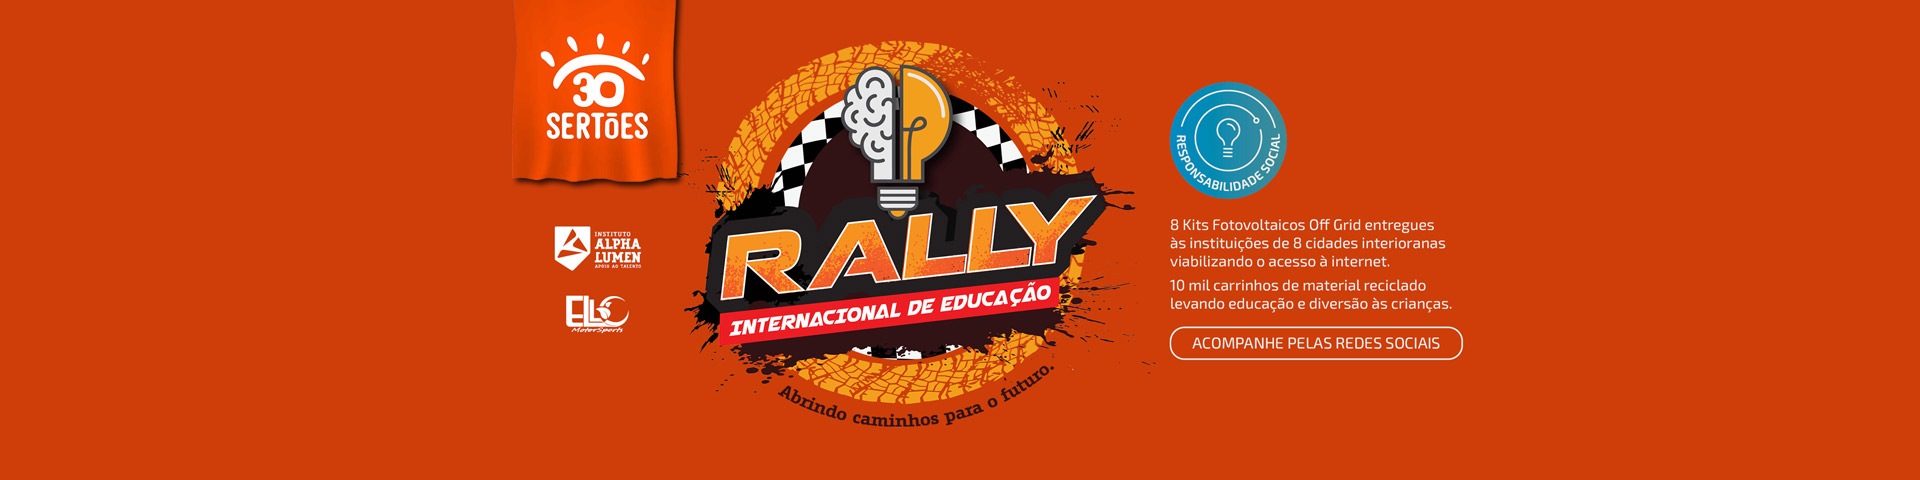 Banner Rally Internacional de Educação